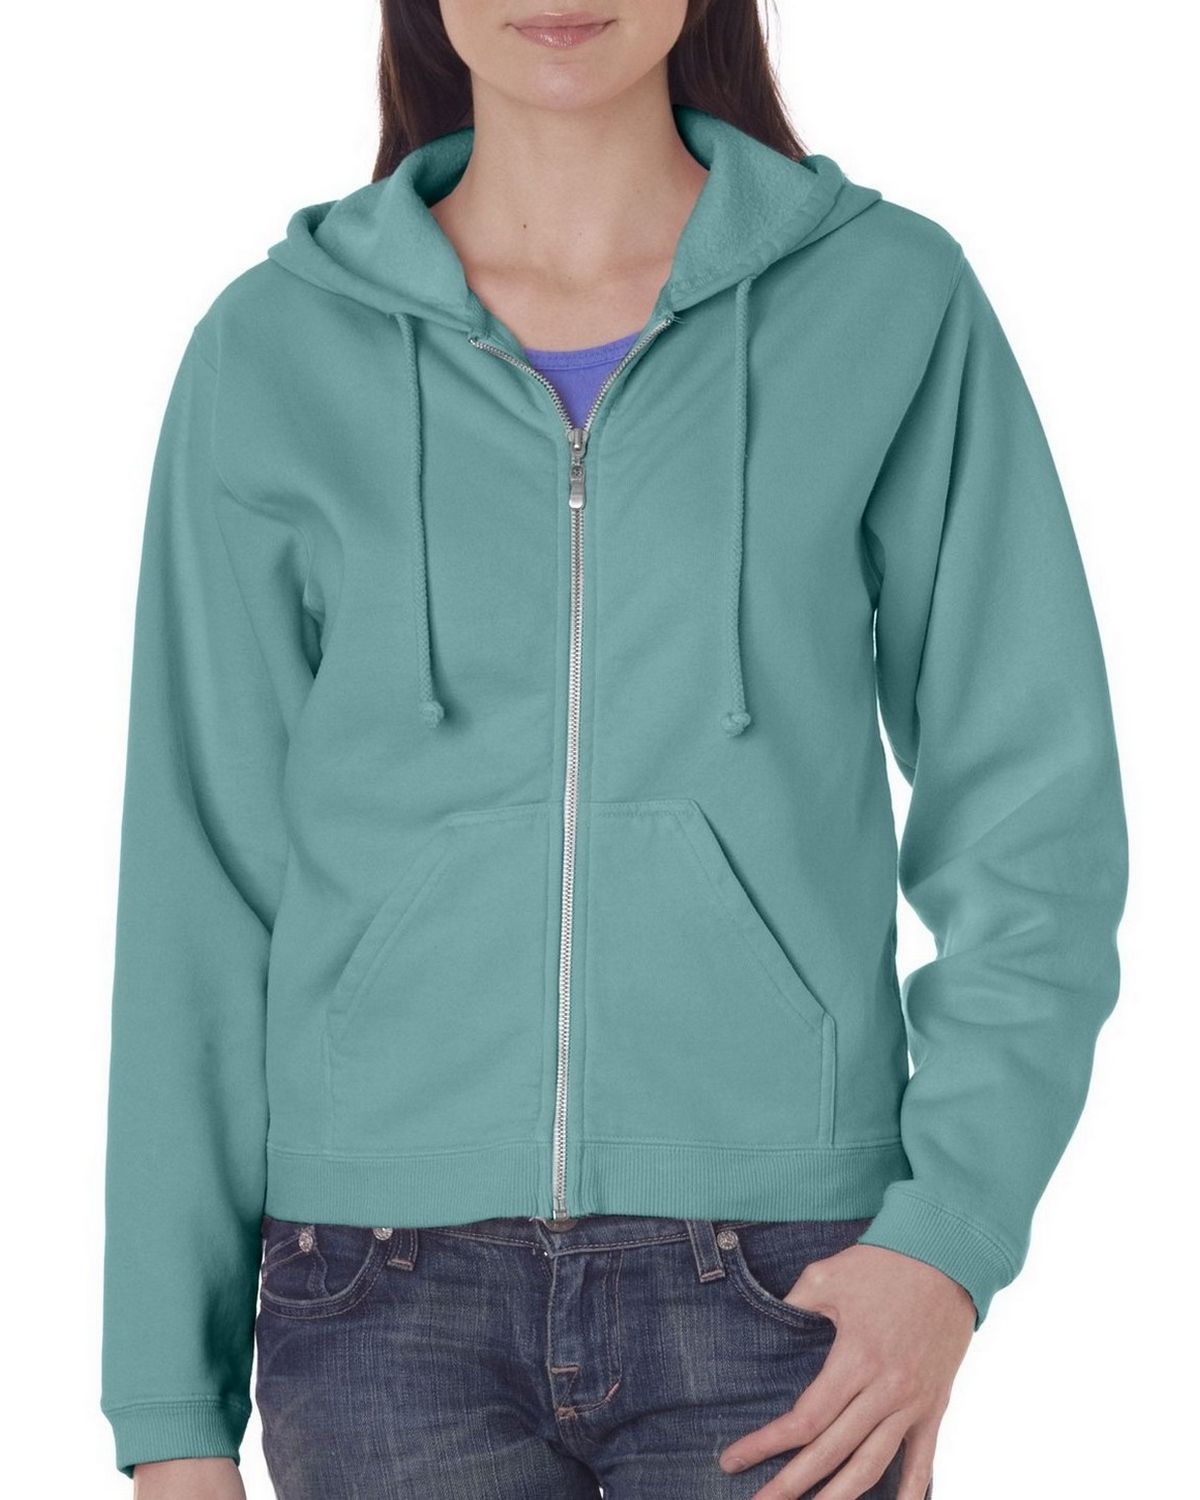 Chouinard 1598 Ladies Full Zip Hooded Sweatshirt - ApparelnBags.com